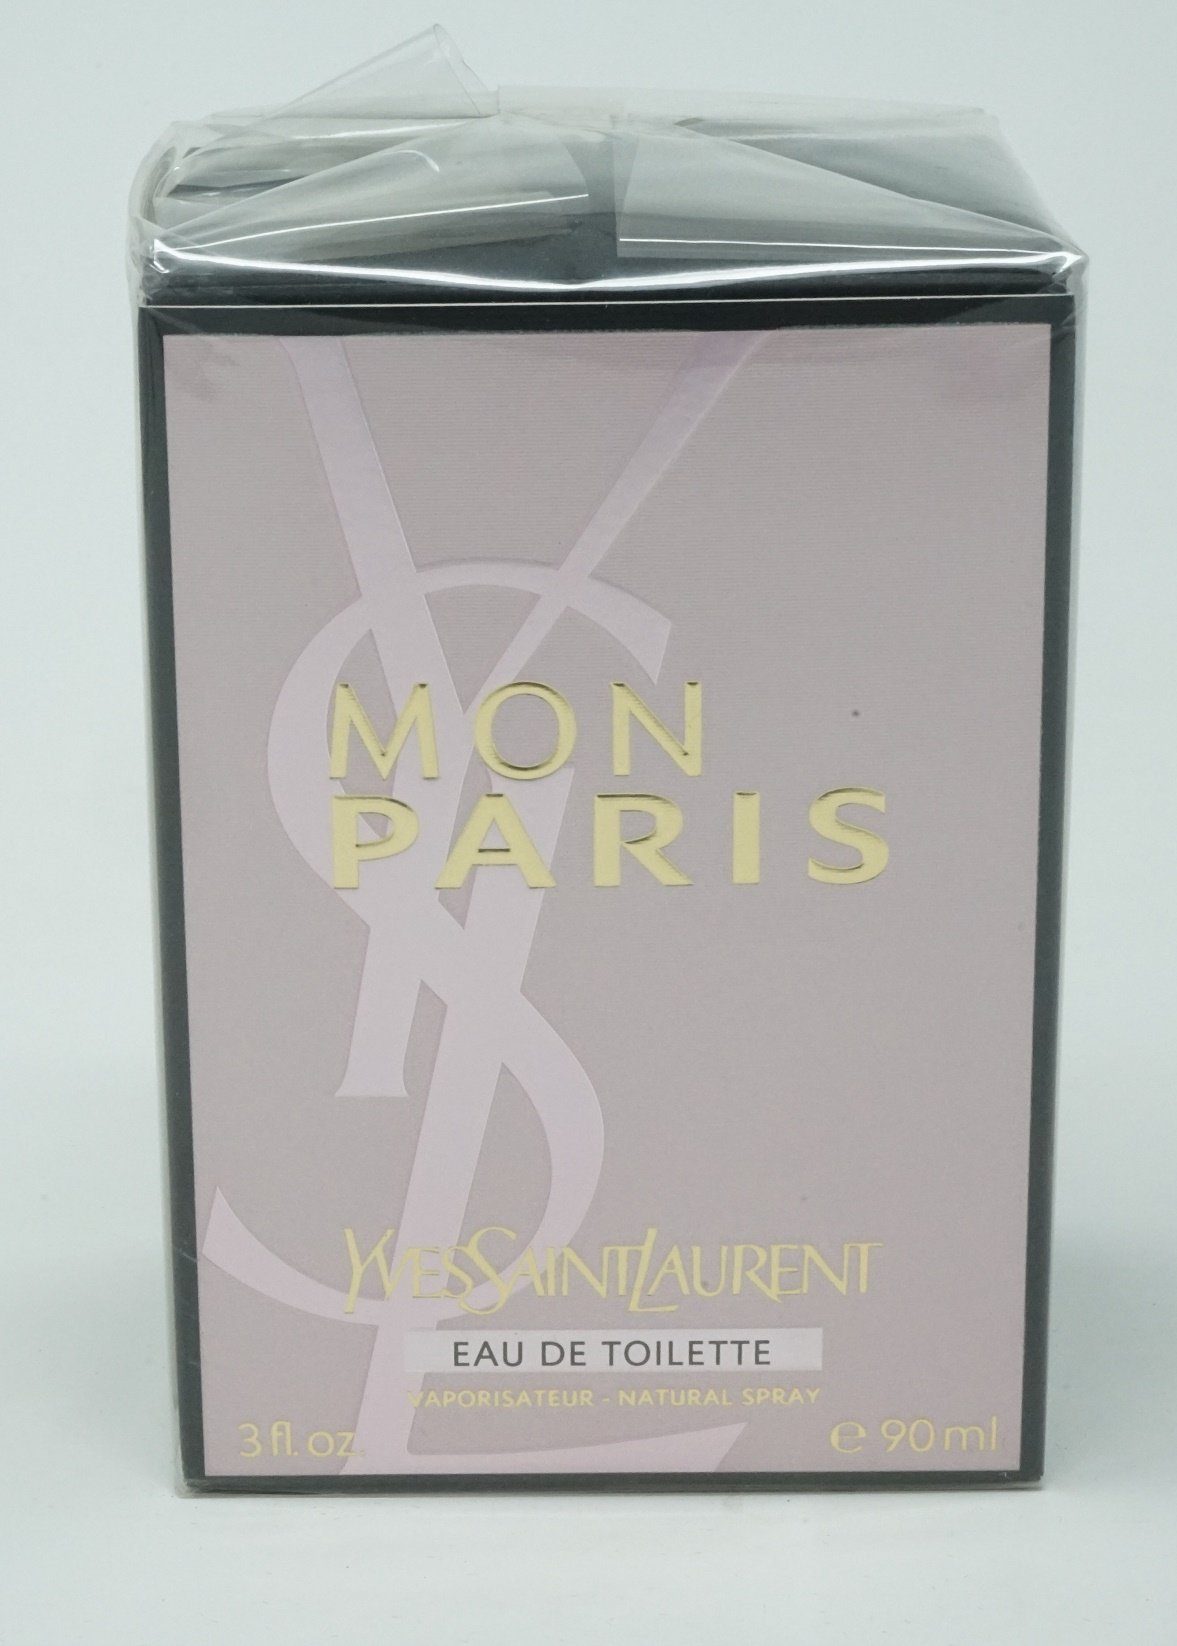 YVES SAINT LAURENT Eau de Toilette Yves Saint Laurent Mon Paris Eau de Toilette Spray 90 ml | Eau de Toilette